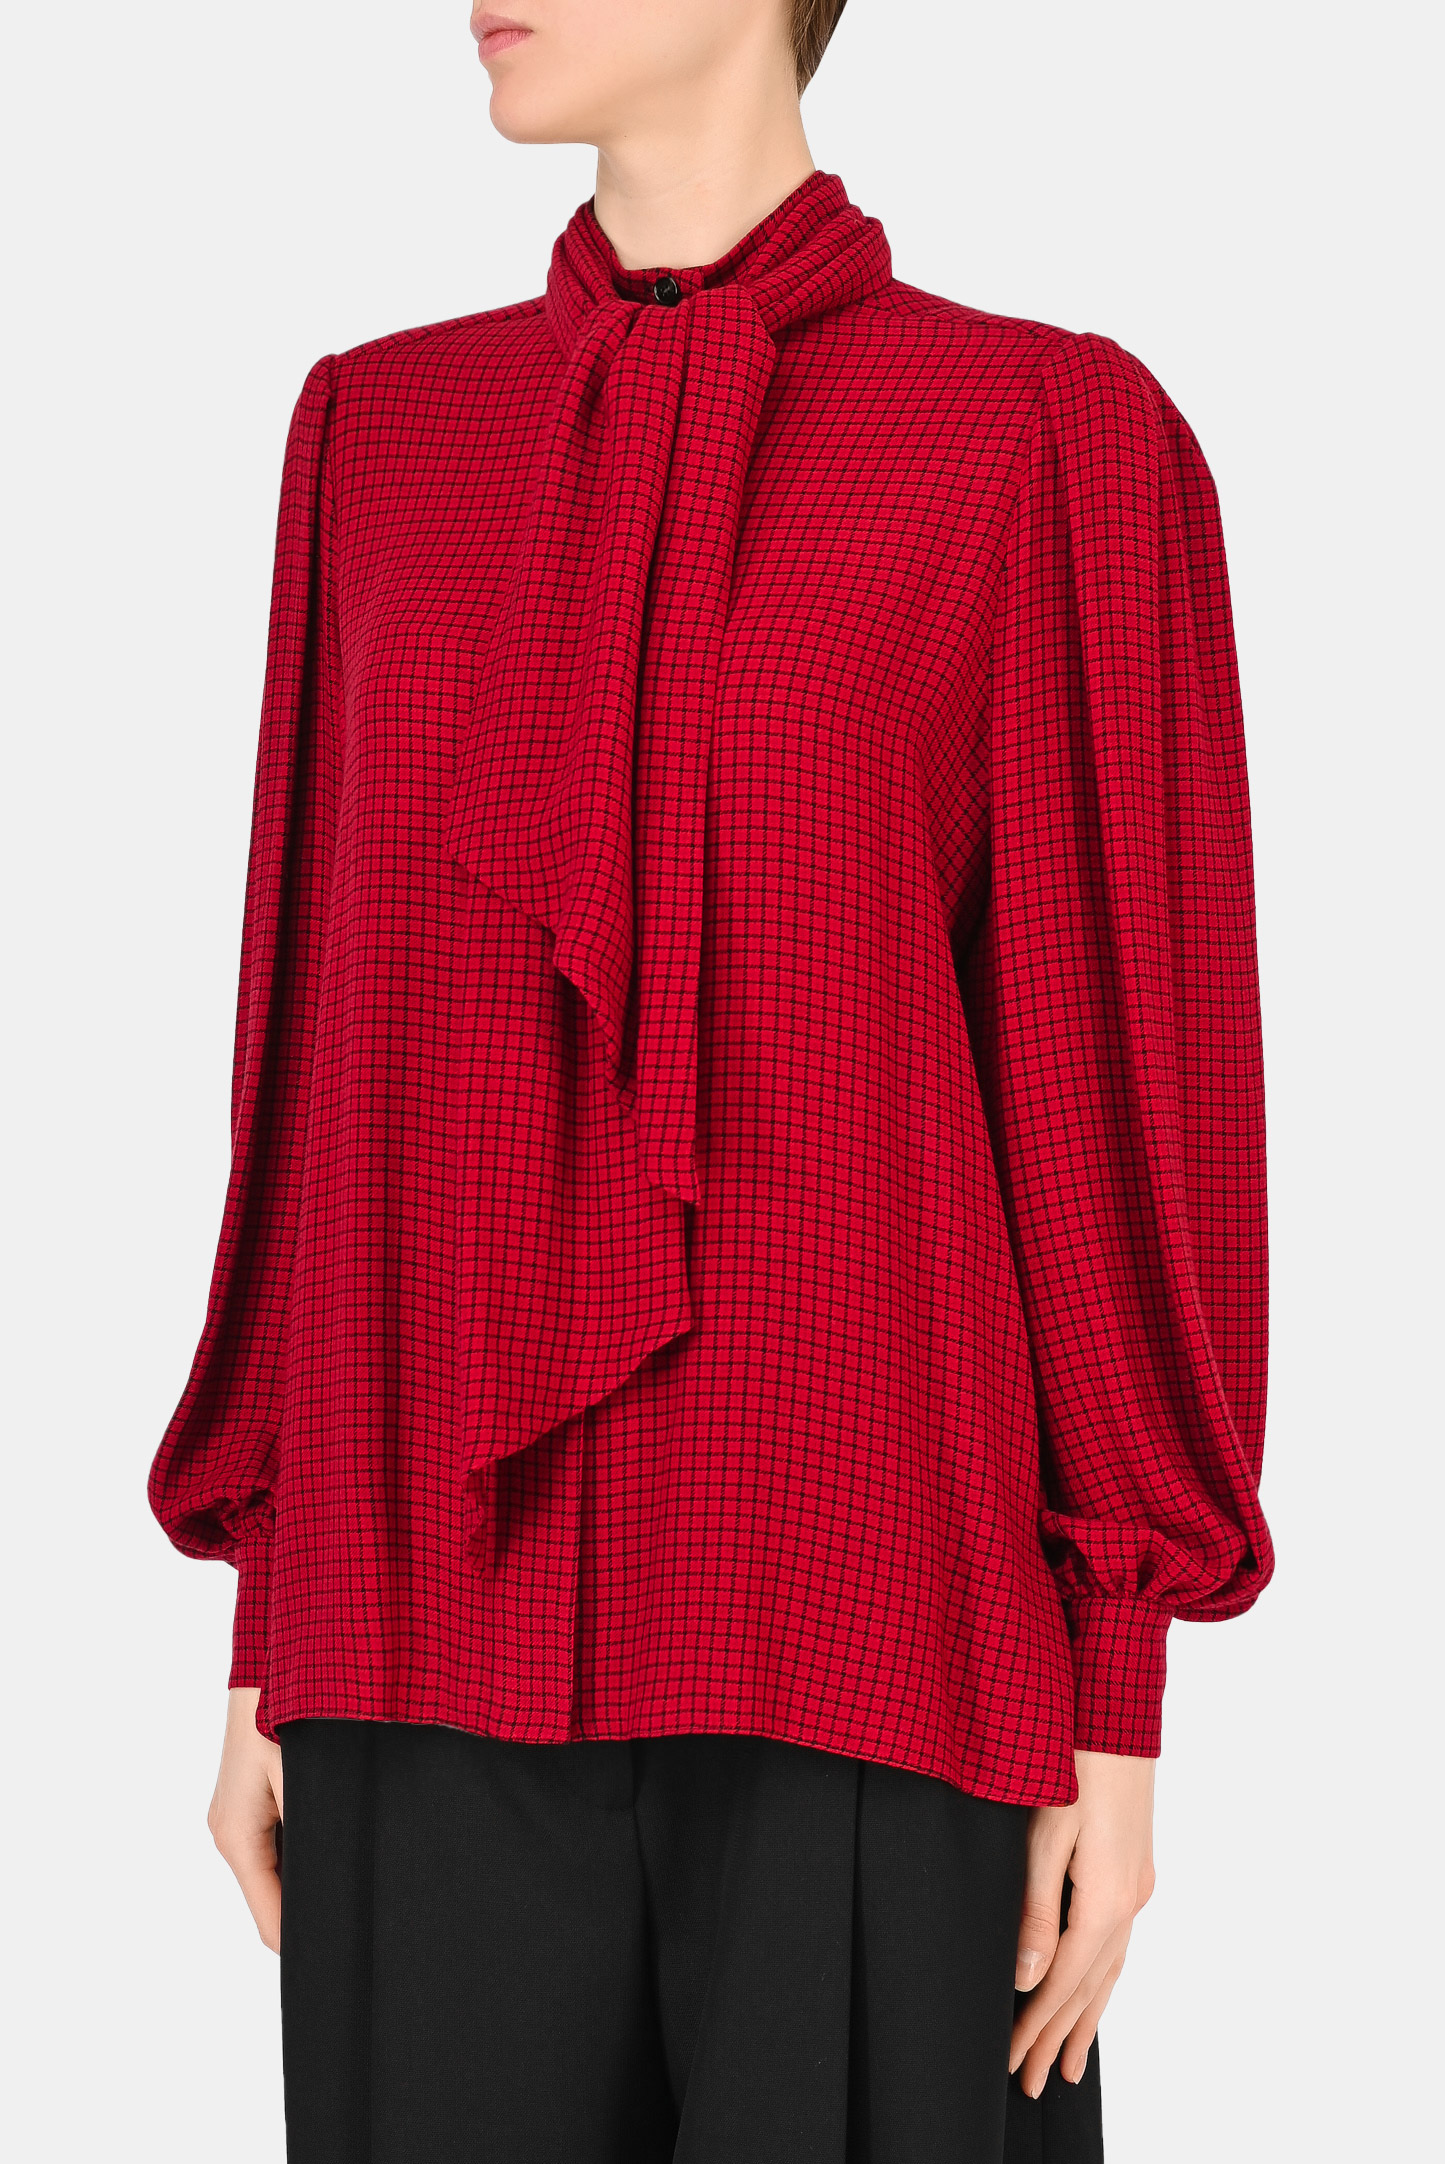 Блуза ALEXANDRE VAUTHIER 213SH1506, цвет: Бордовый, Женский